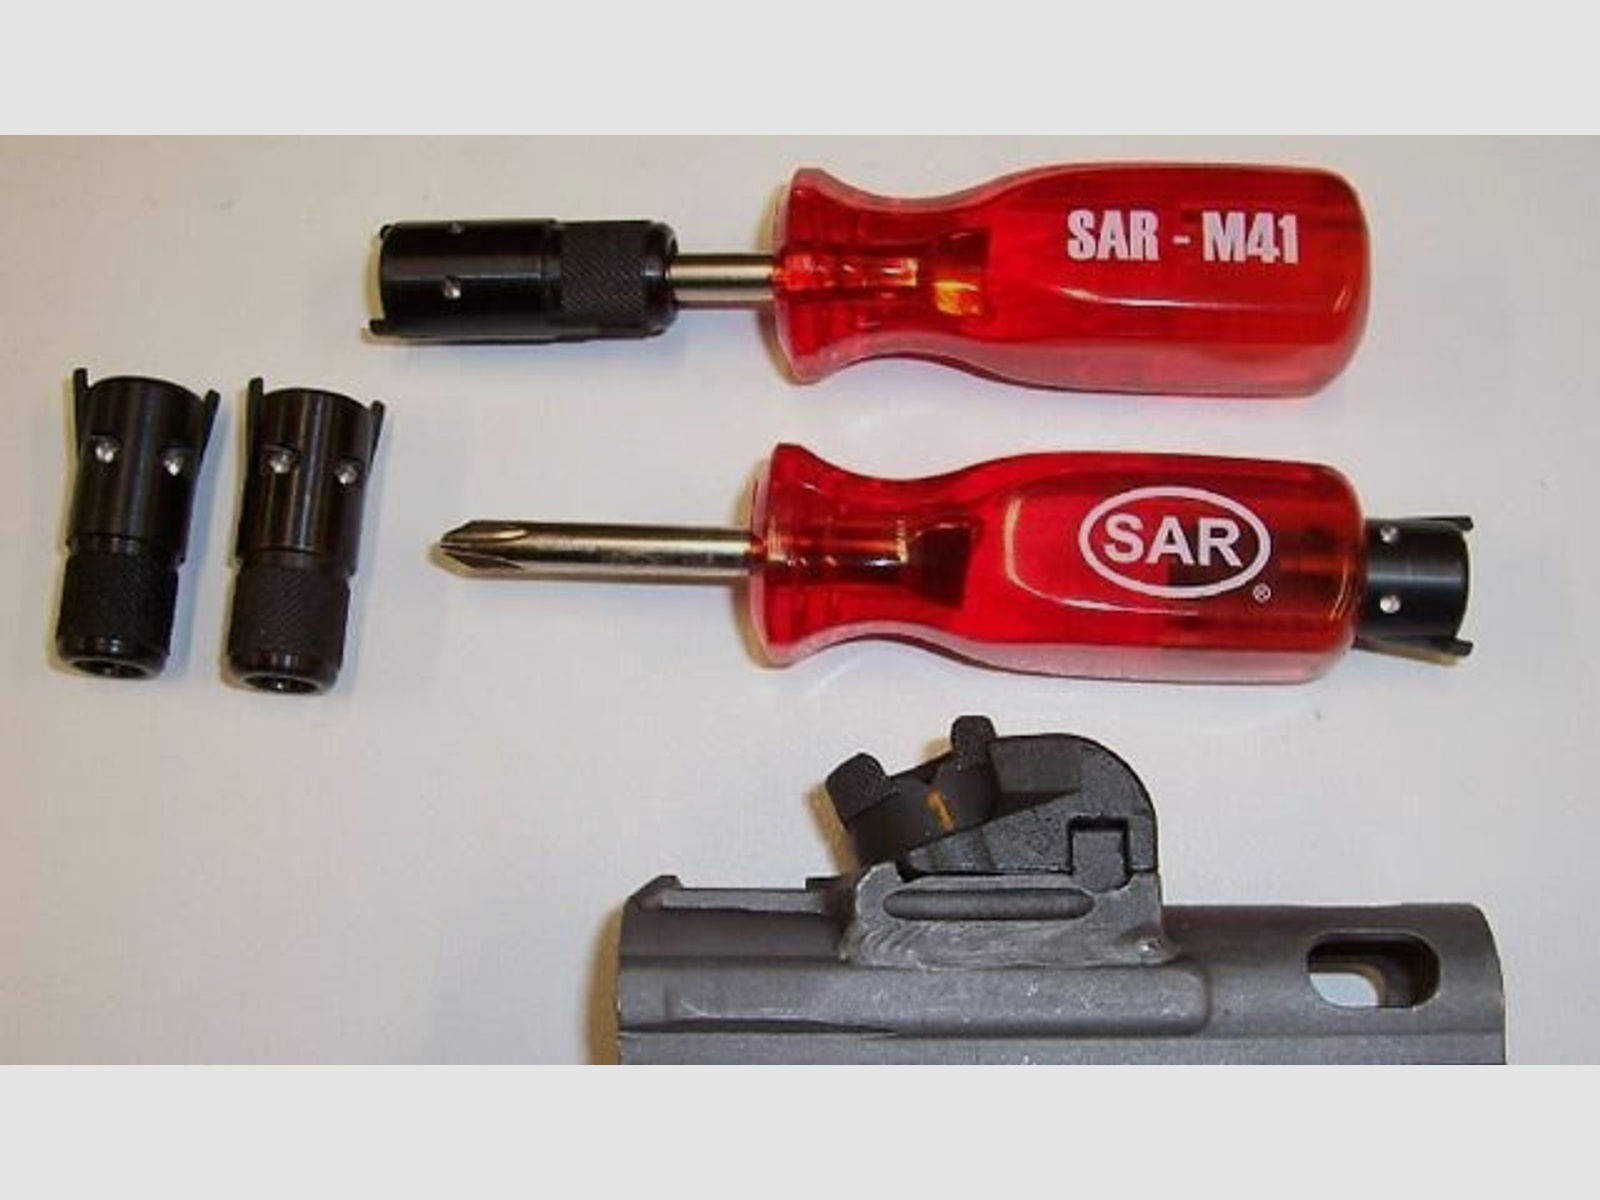 Schwaben Arms GmbH	 - SONDERANGEBOT - SAR M41 Visierverstellschlüssel SAR M41, HK41, G3, SL6,SL7, MP5 /Klone